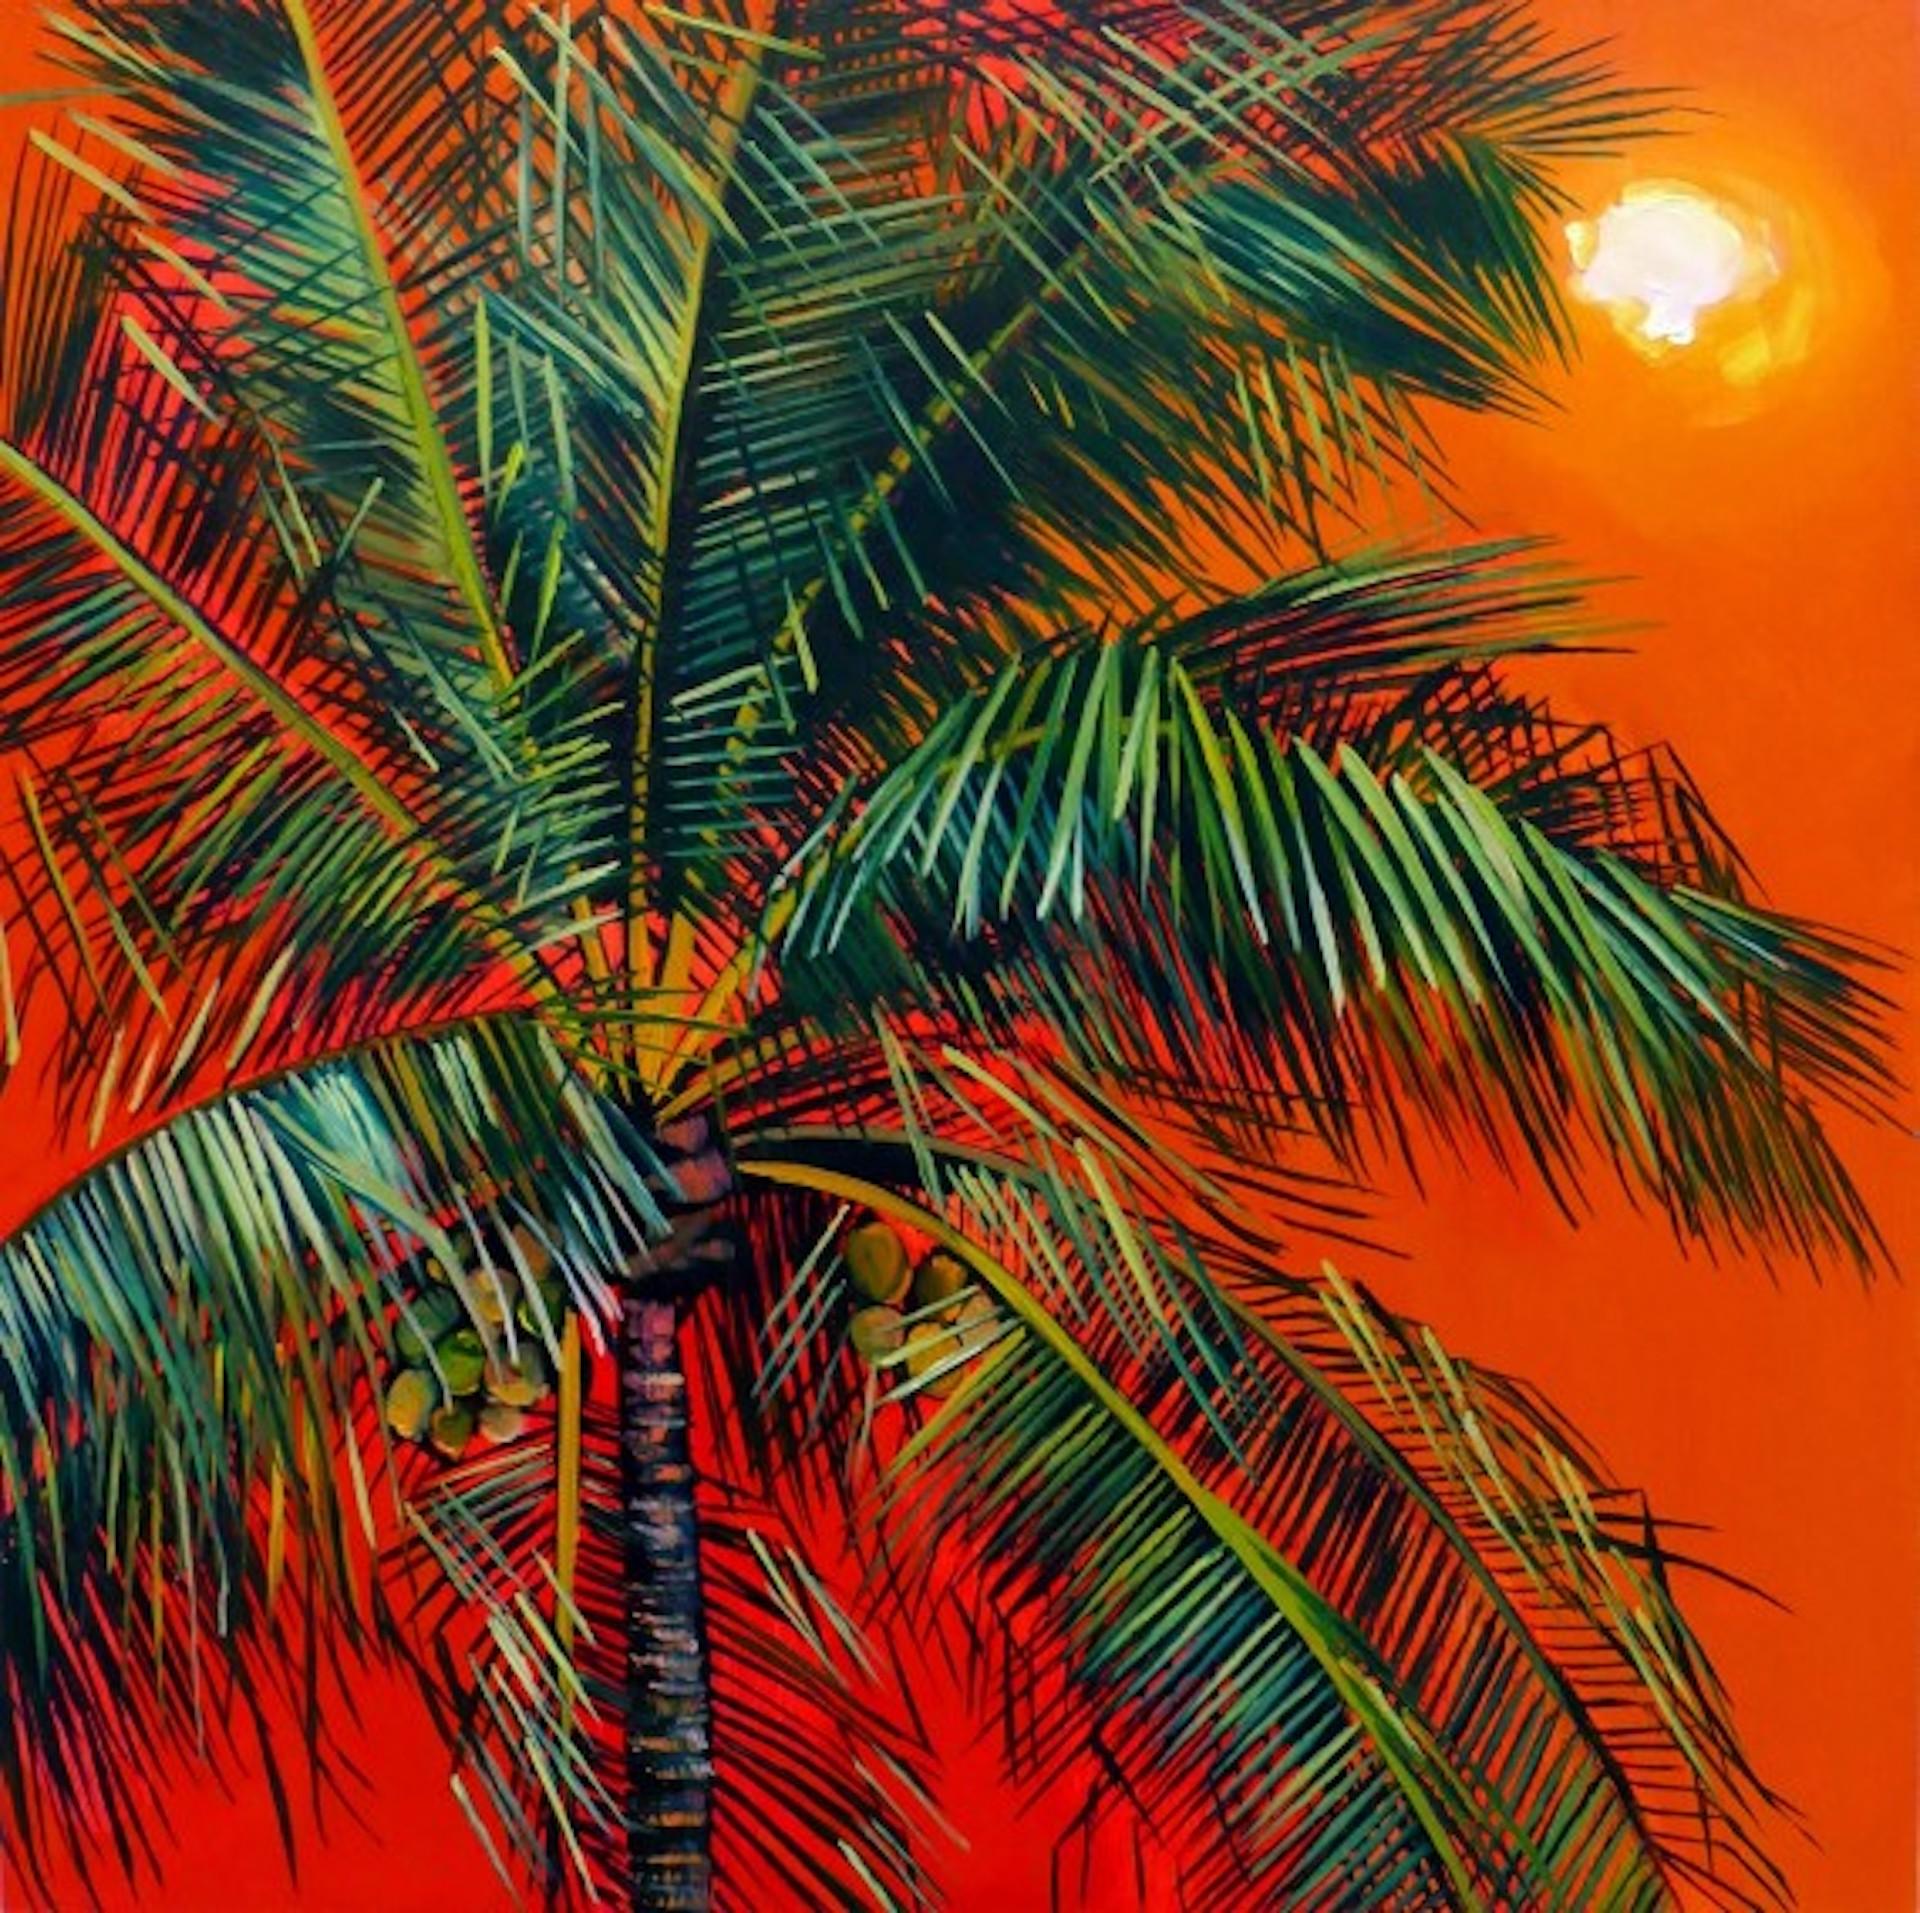 Œuvre d'art abordable Zanzibar, Alanna Eakin, peinture originale d'arbre d'été